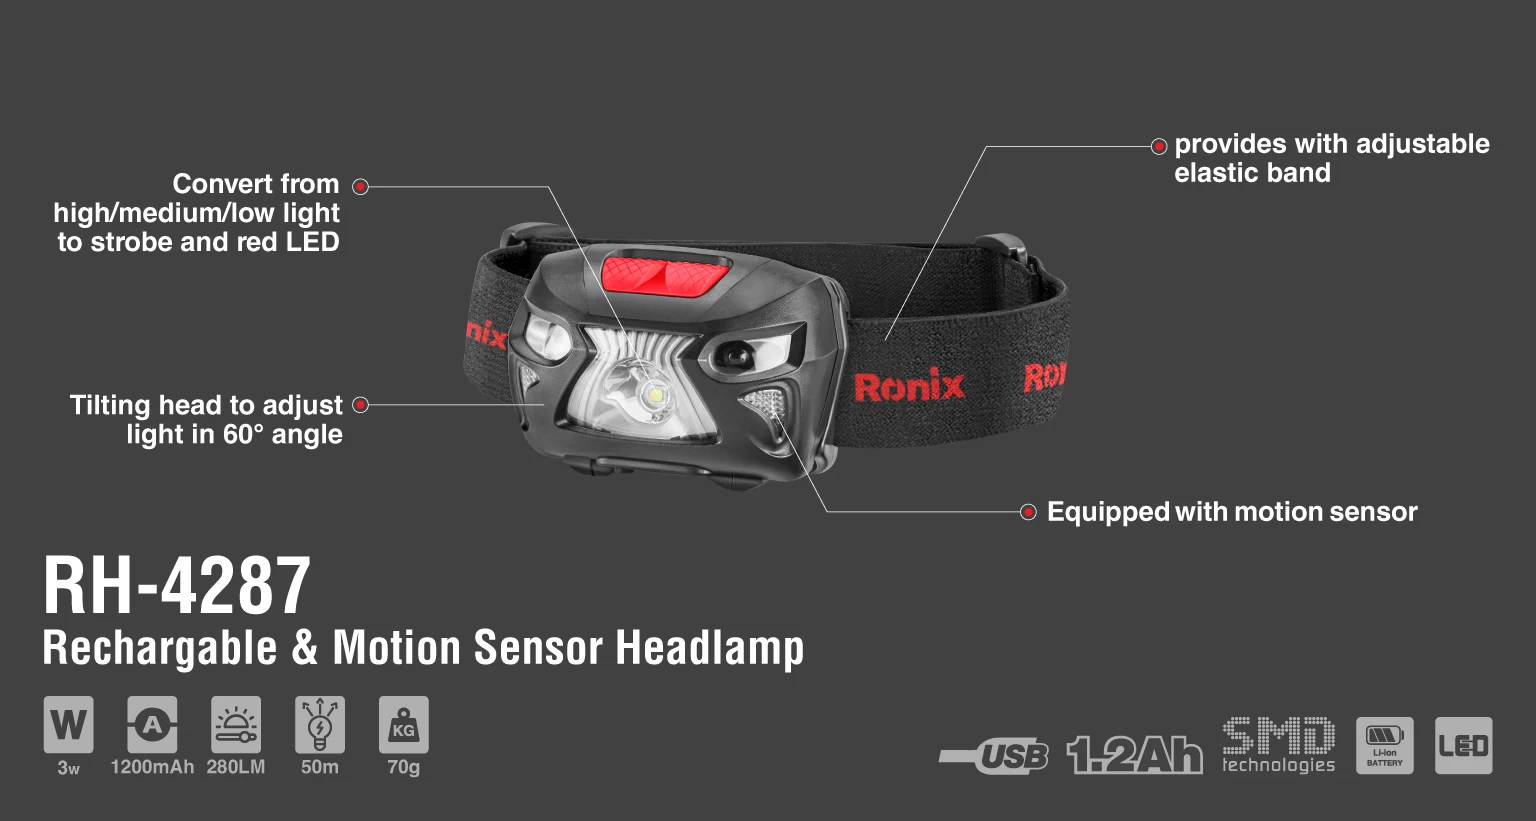 5w Rechargable & Motion sensor headlamp 280LM_details